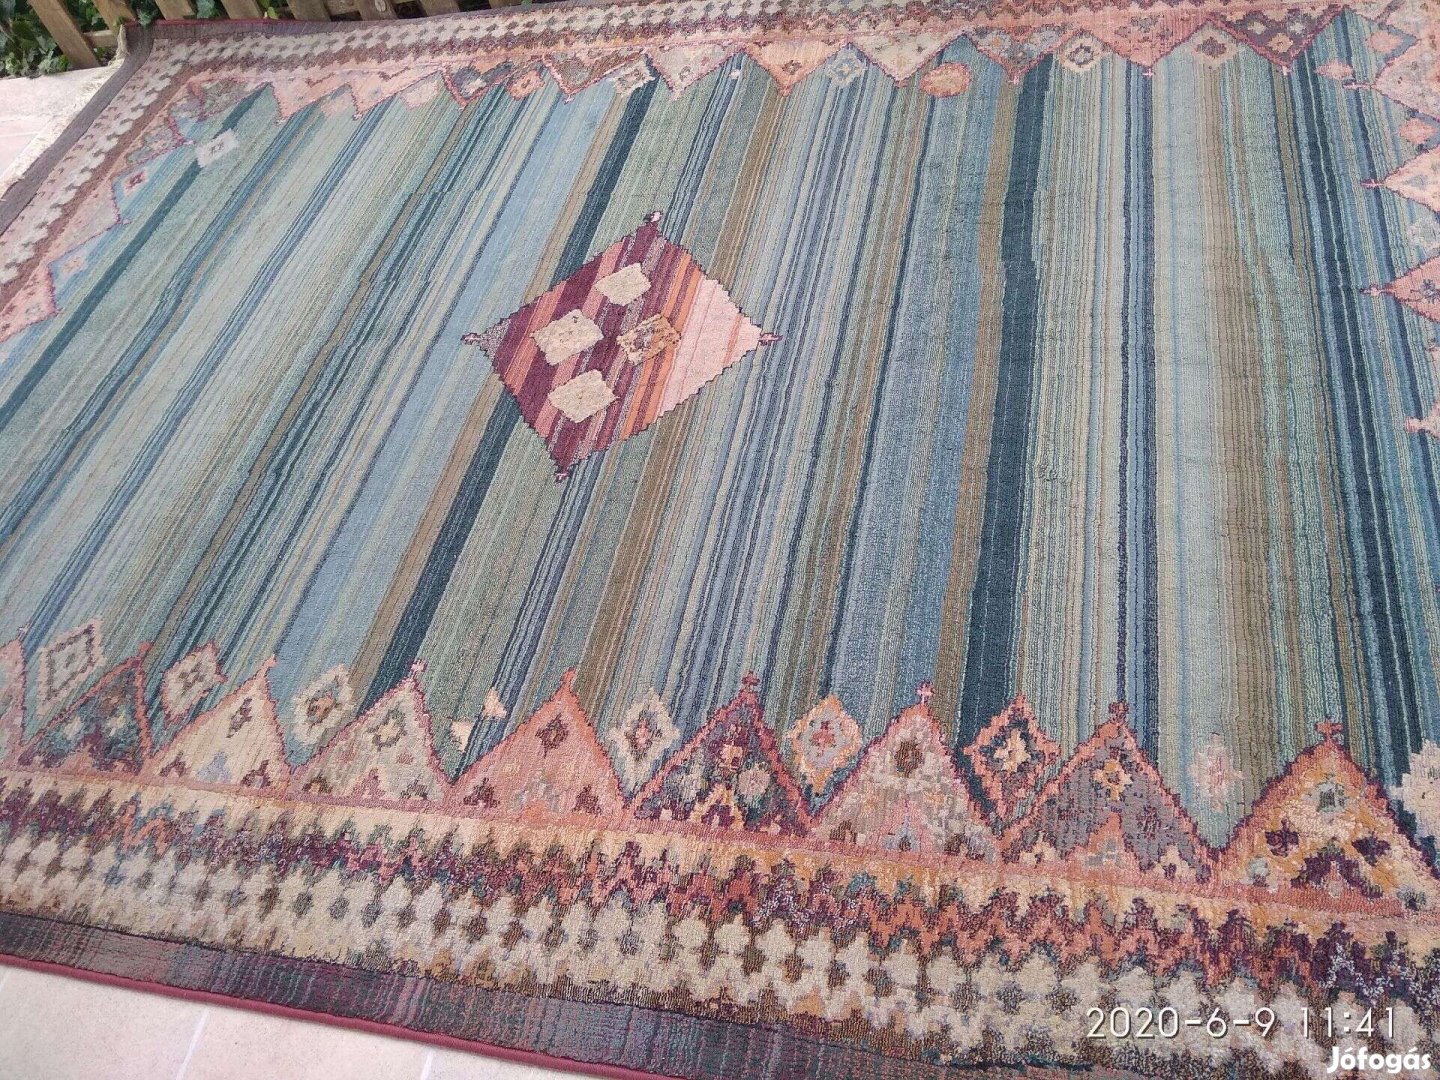 Eladó vastag nagy méretű gyapjú gépi perzsa szőnyeg